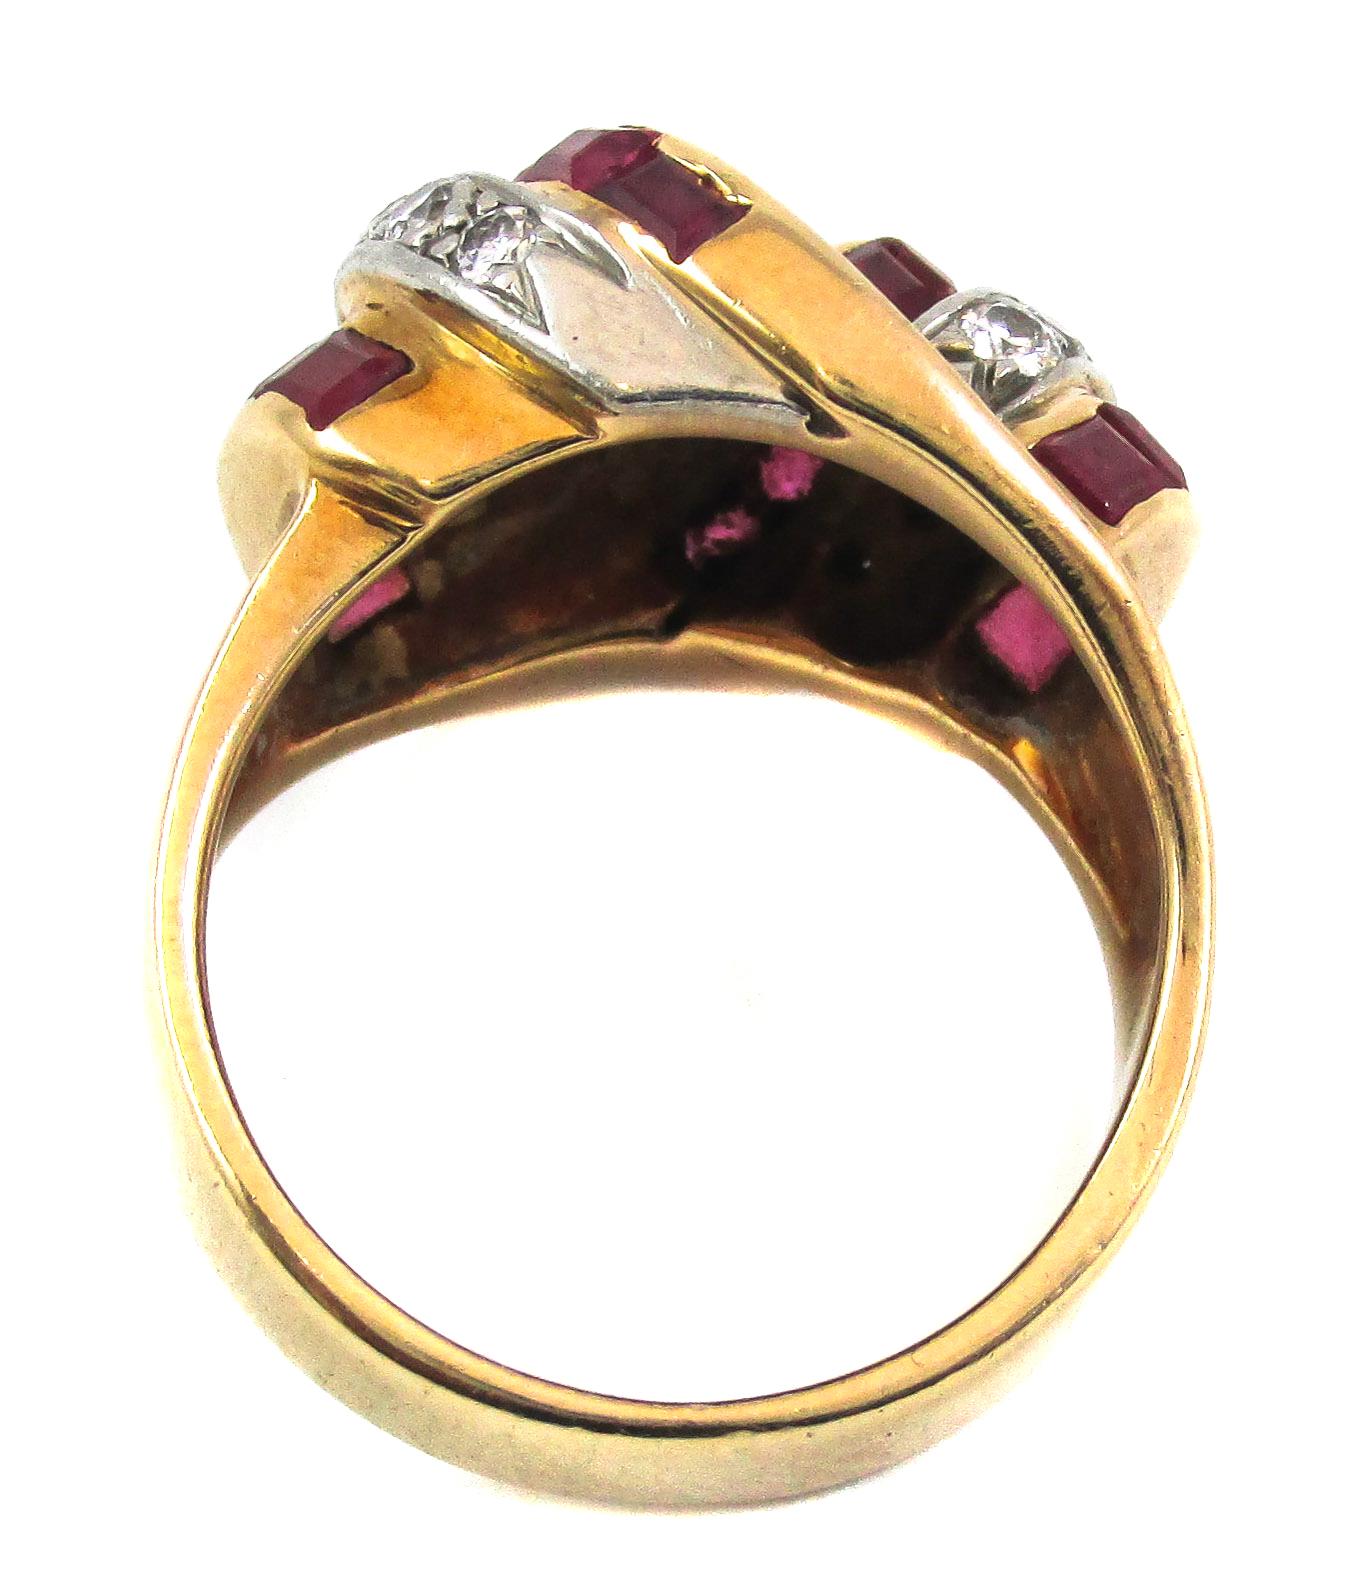 Klassischer Retro-Ring von ca. 1940 mit einem bezaubernden Design aus kanalgefassten Burma-Rubinen und Diamanten im alten europäischen Schliff. Das geschwungene Design und die abwechselnd roten und weißen Bänder verleihen diesem Ring sein